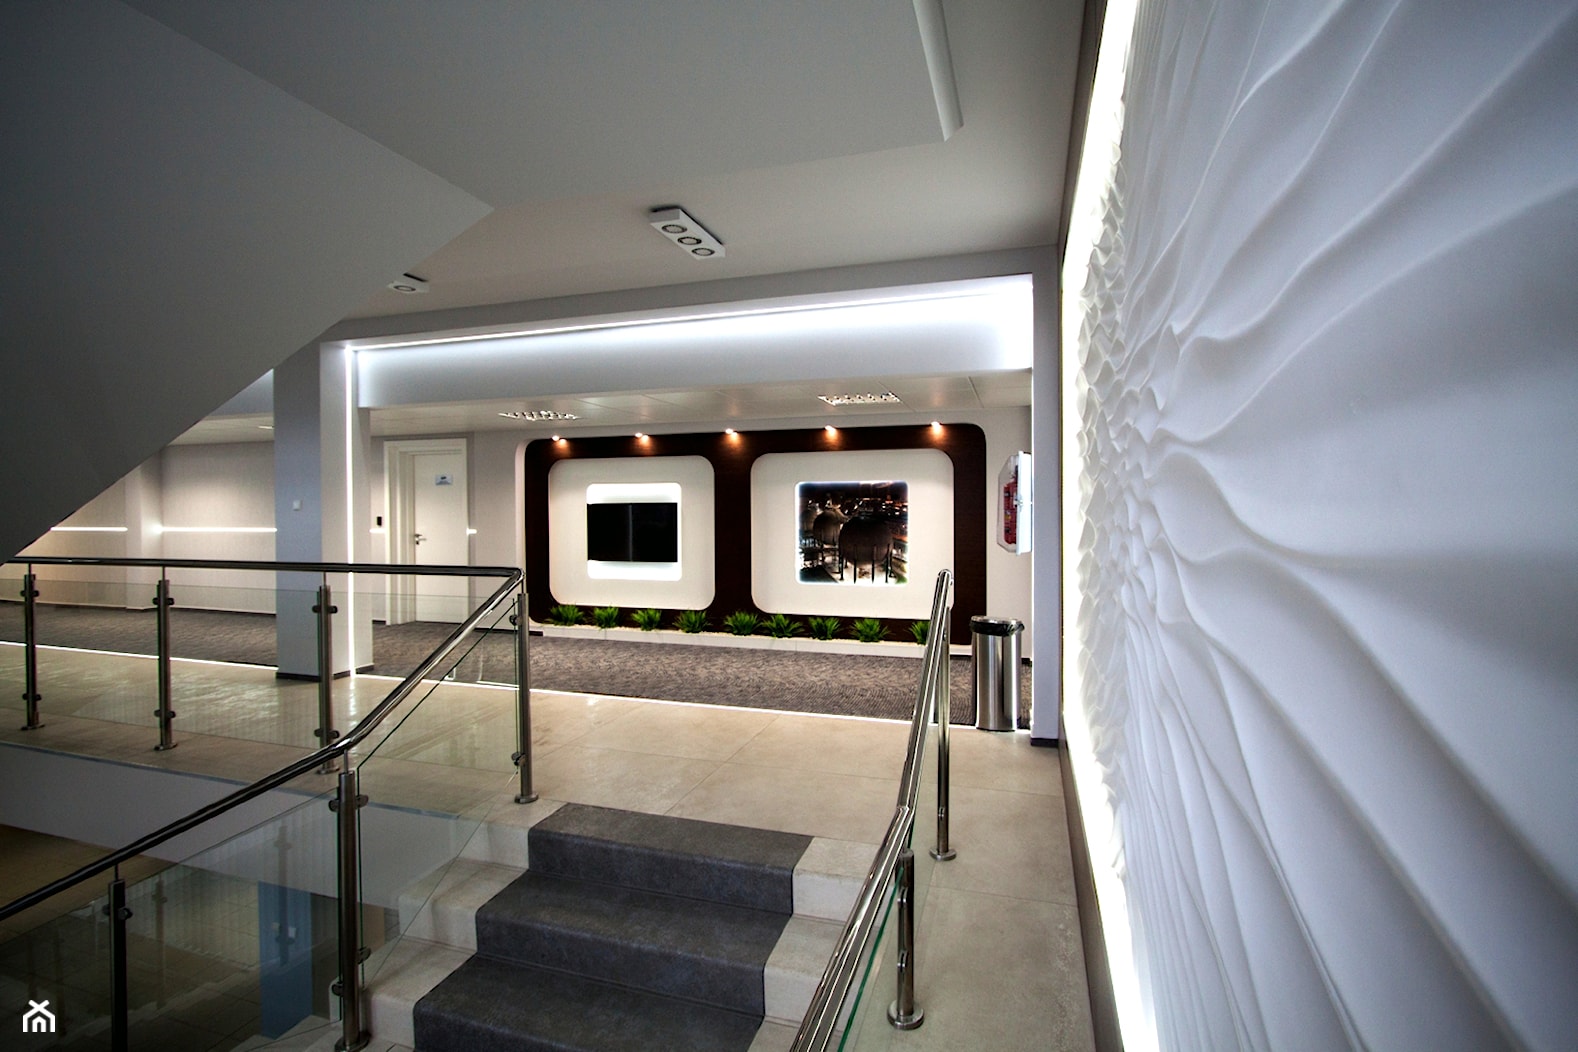 Powierzchnia biznesowa - hole, korytarze - zdjęcie od Pracownia Projektowania Wnętrz Małgorzata Czapla - Homebook